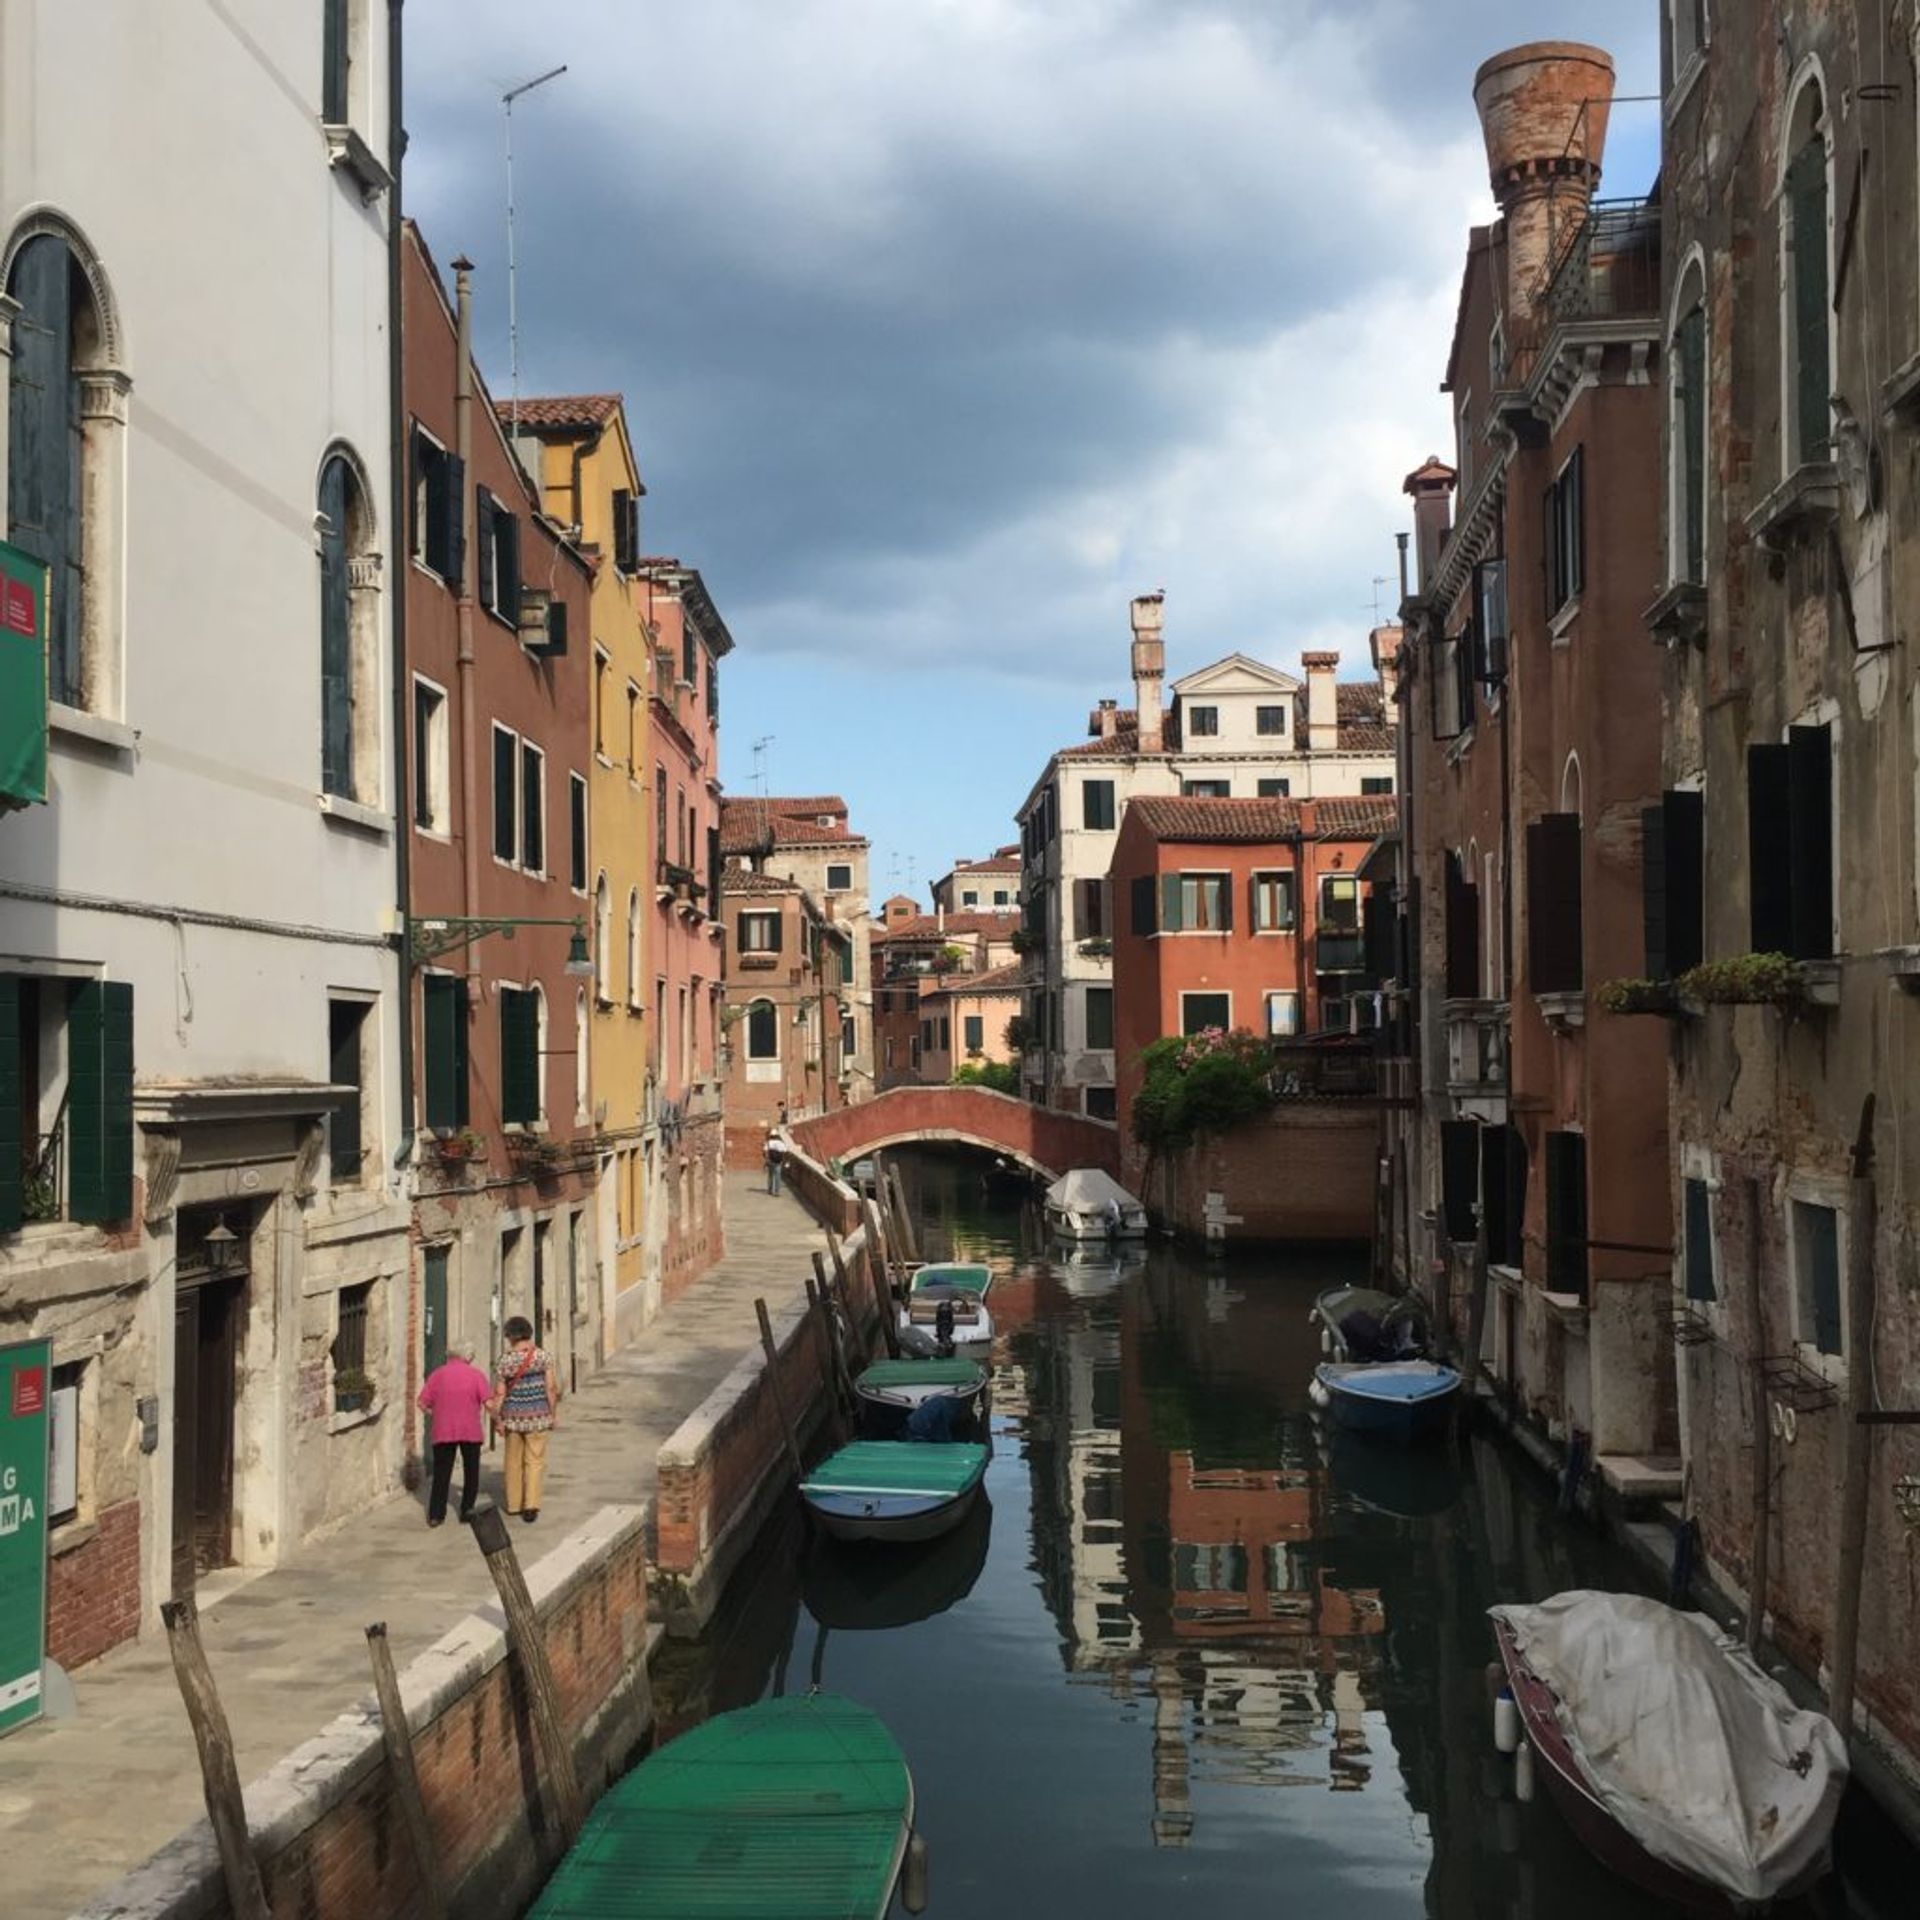 Venice in June 2018